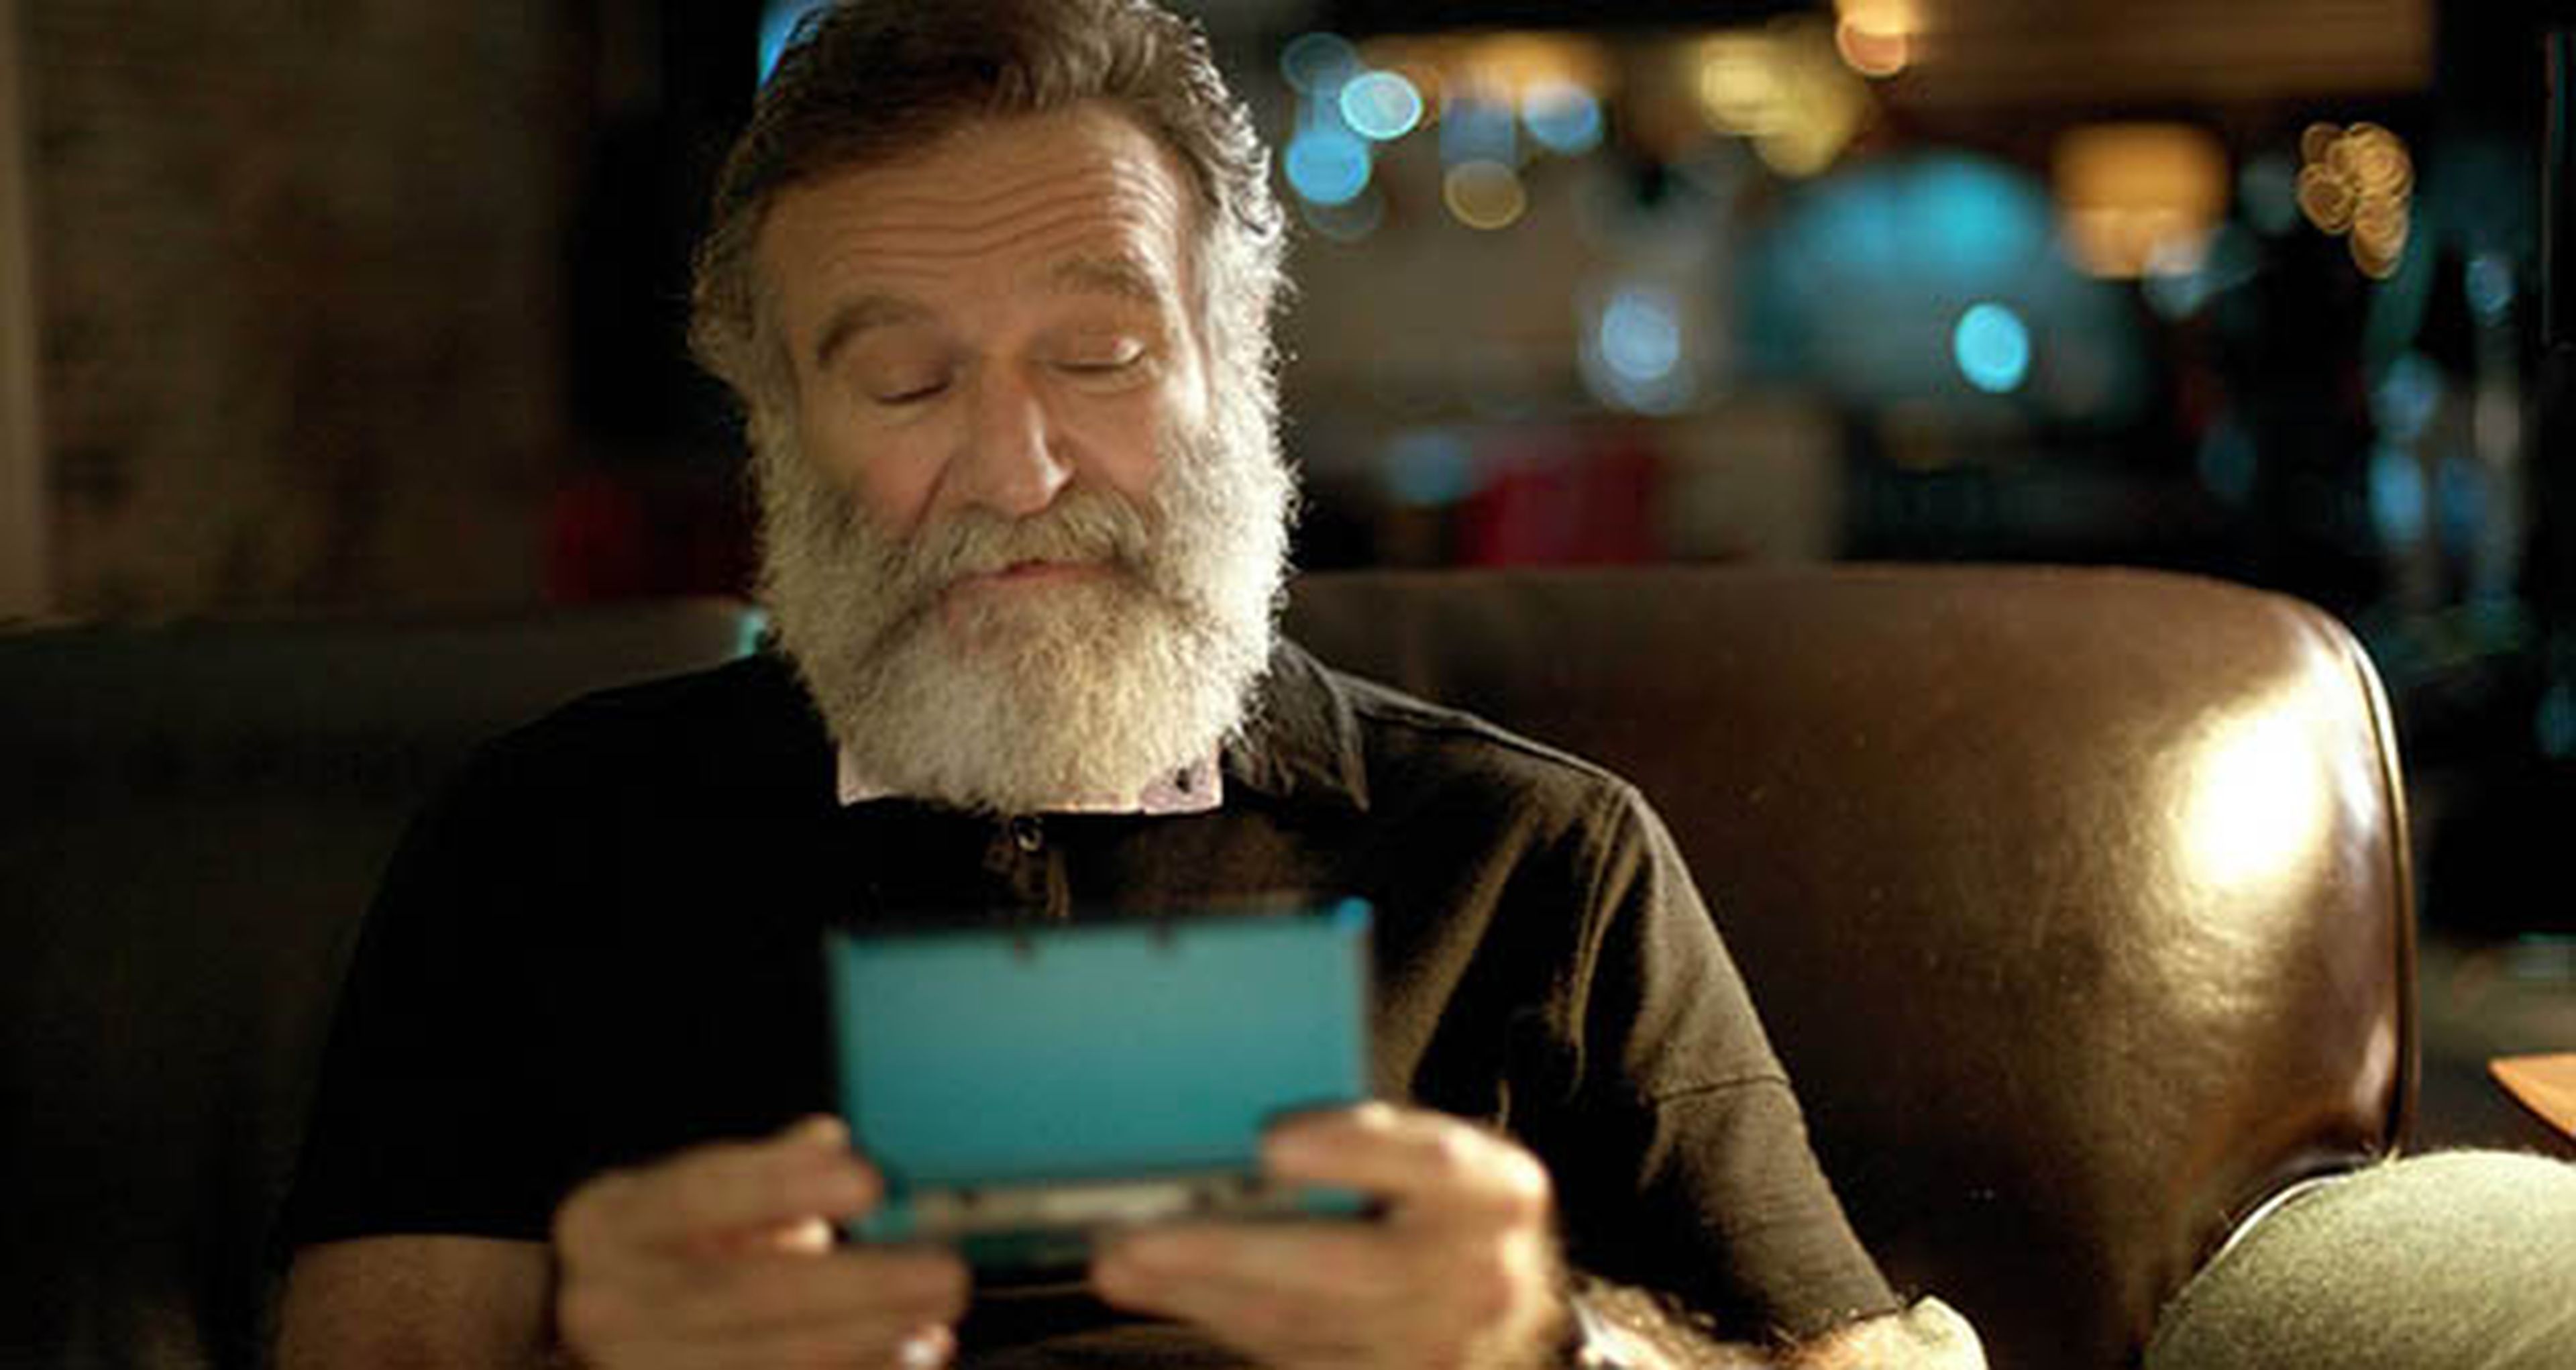 Nintendo responde a la petición sobre Robin Williams